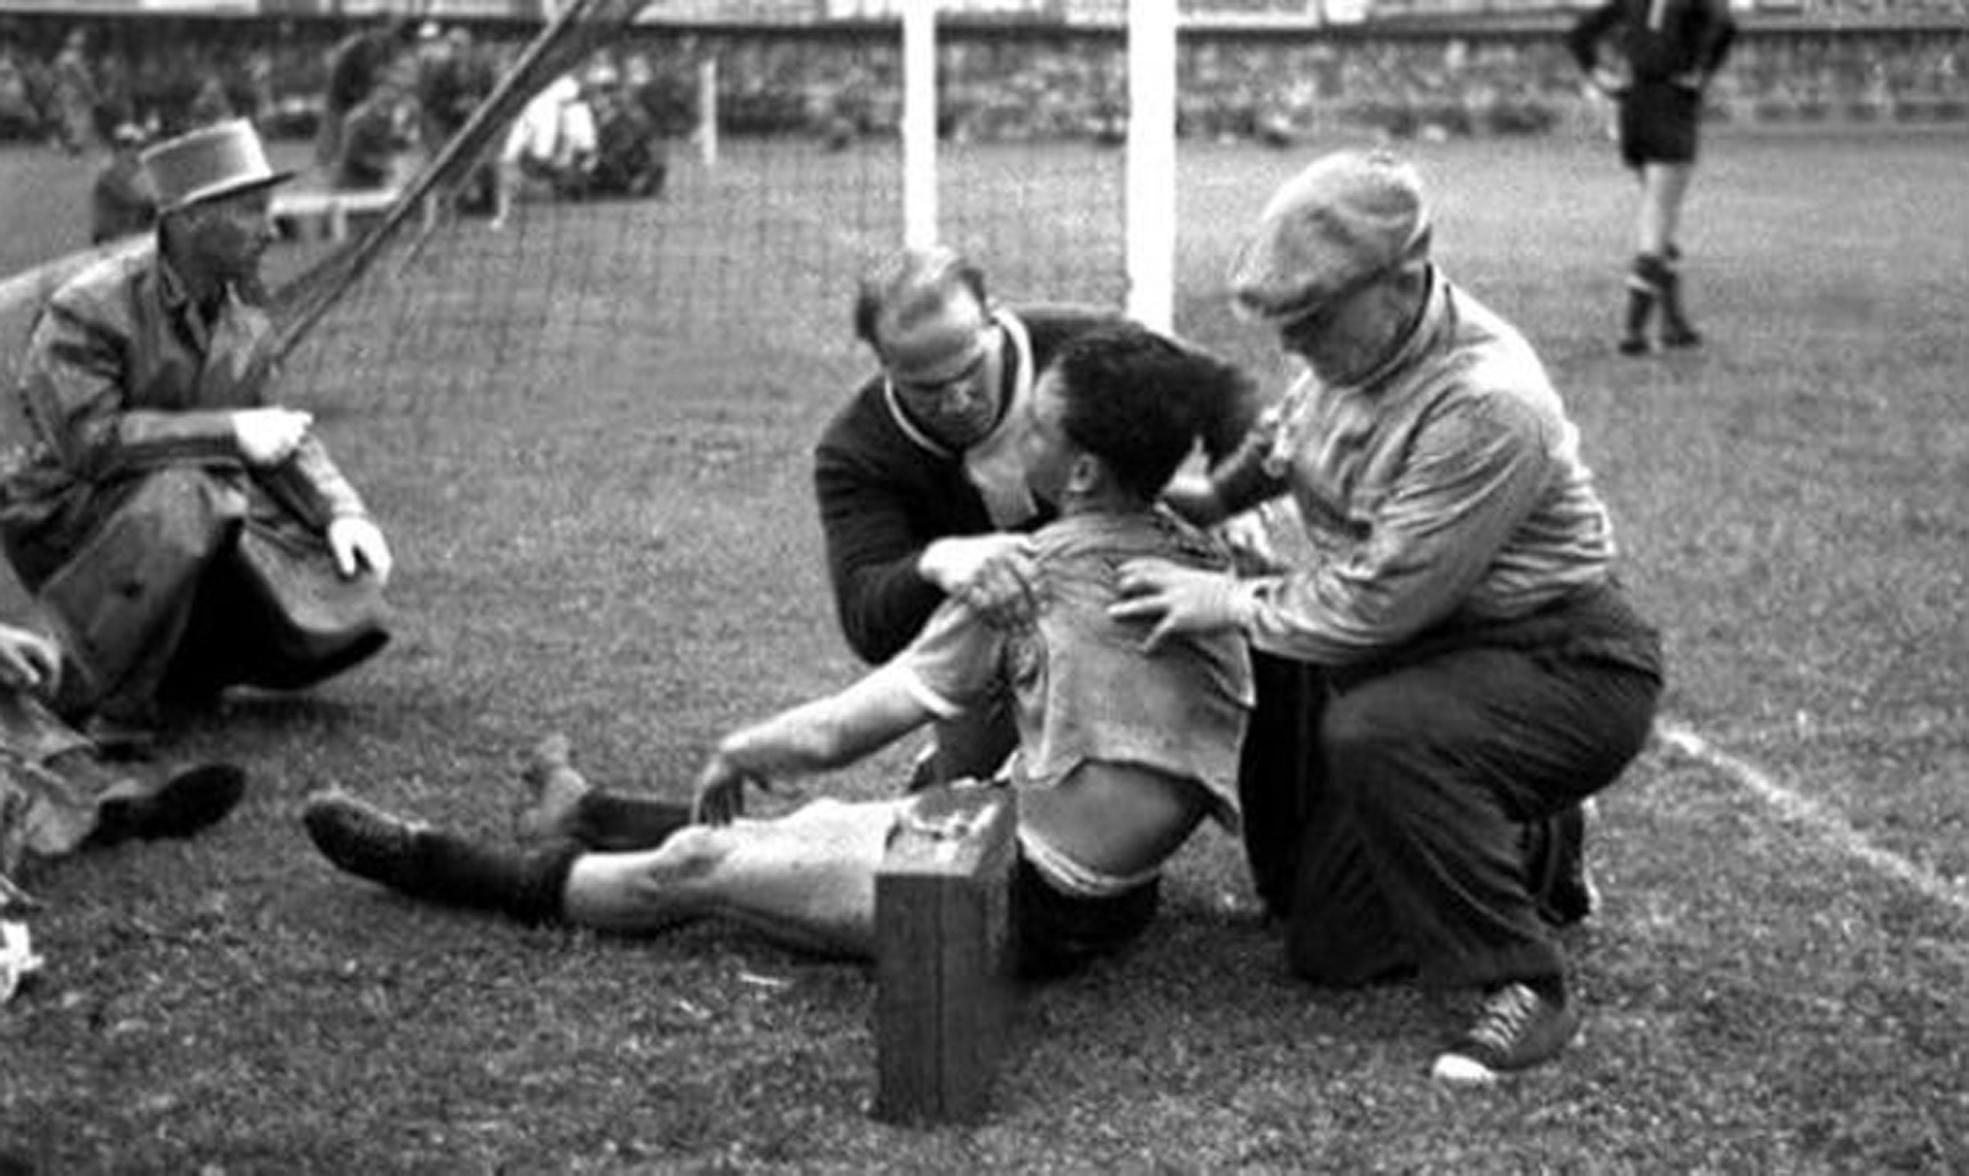 Hohberg, el delantero uruguayo que murió sobre el césped, ‘resucitó’ y siguió jugando.